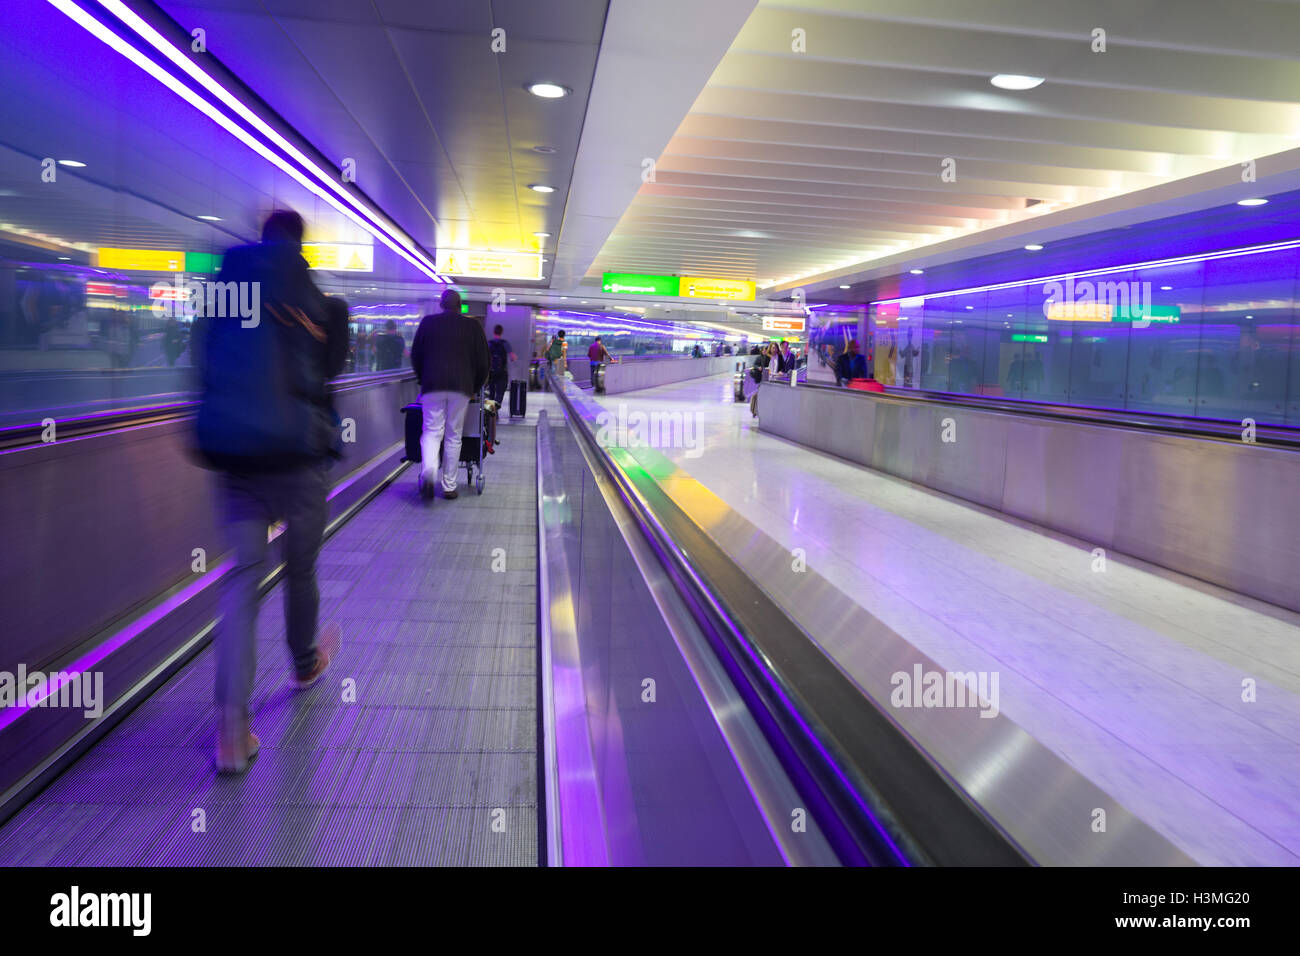 Vitesse d'obturation lente utilisée pour enregistrer les mouvement exagéré des voyageurs au terminal de l'aéroport Heathrow de Londres, Royaume-Uni, Banque D'Images